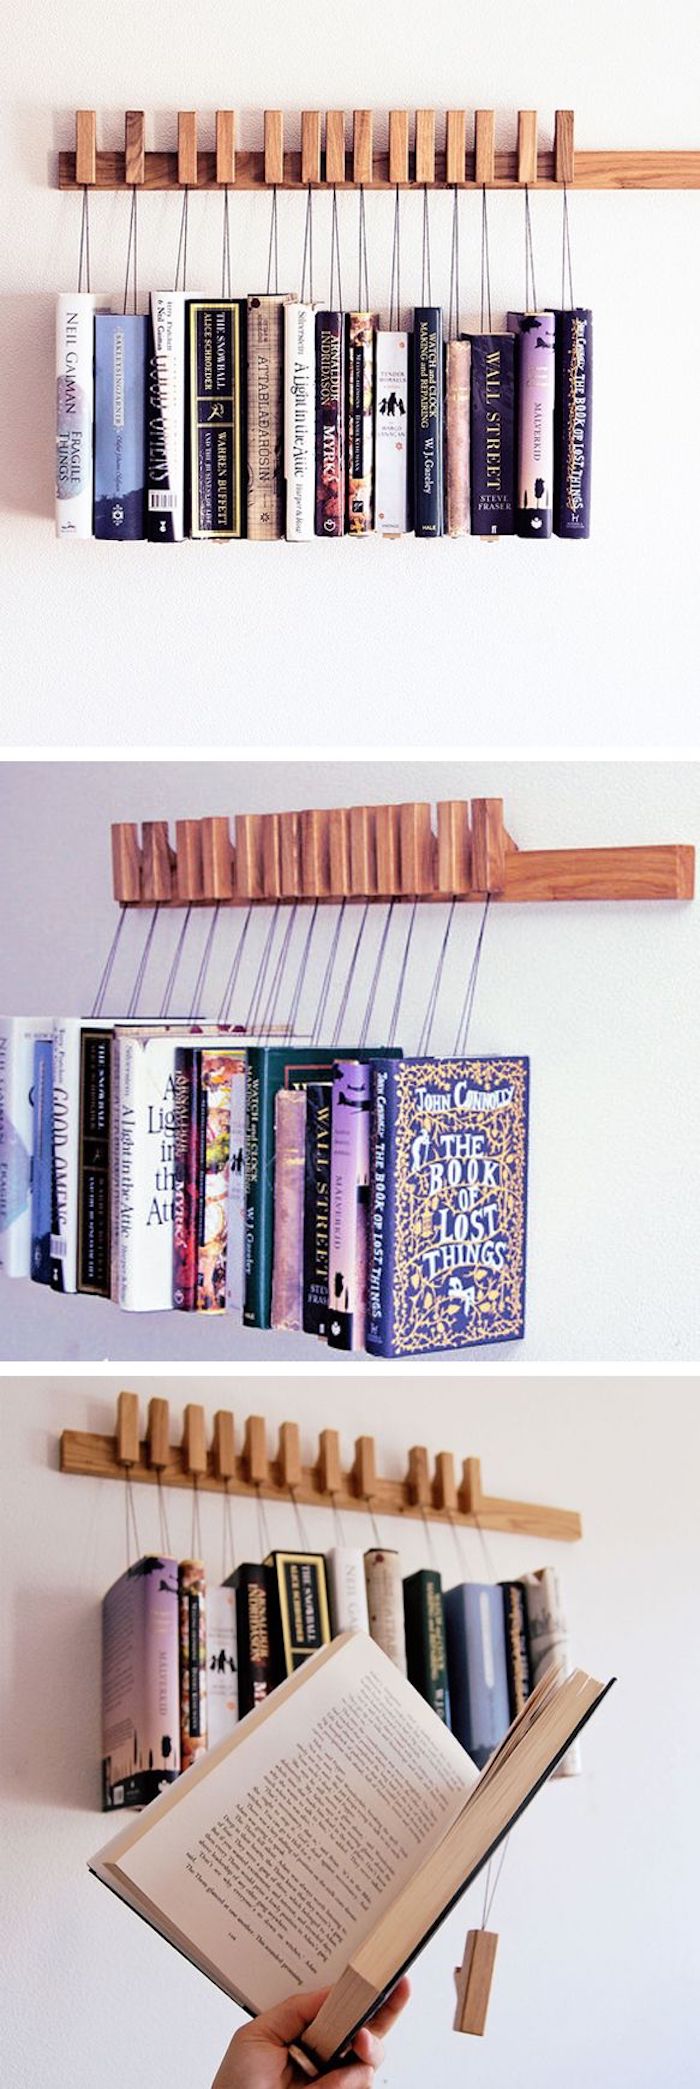 Книги в роли декора: 20 идей оформления книжных полок и грамотной организации пространства